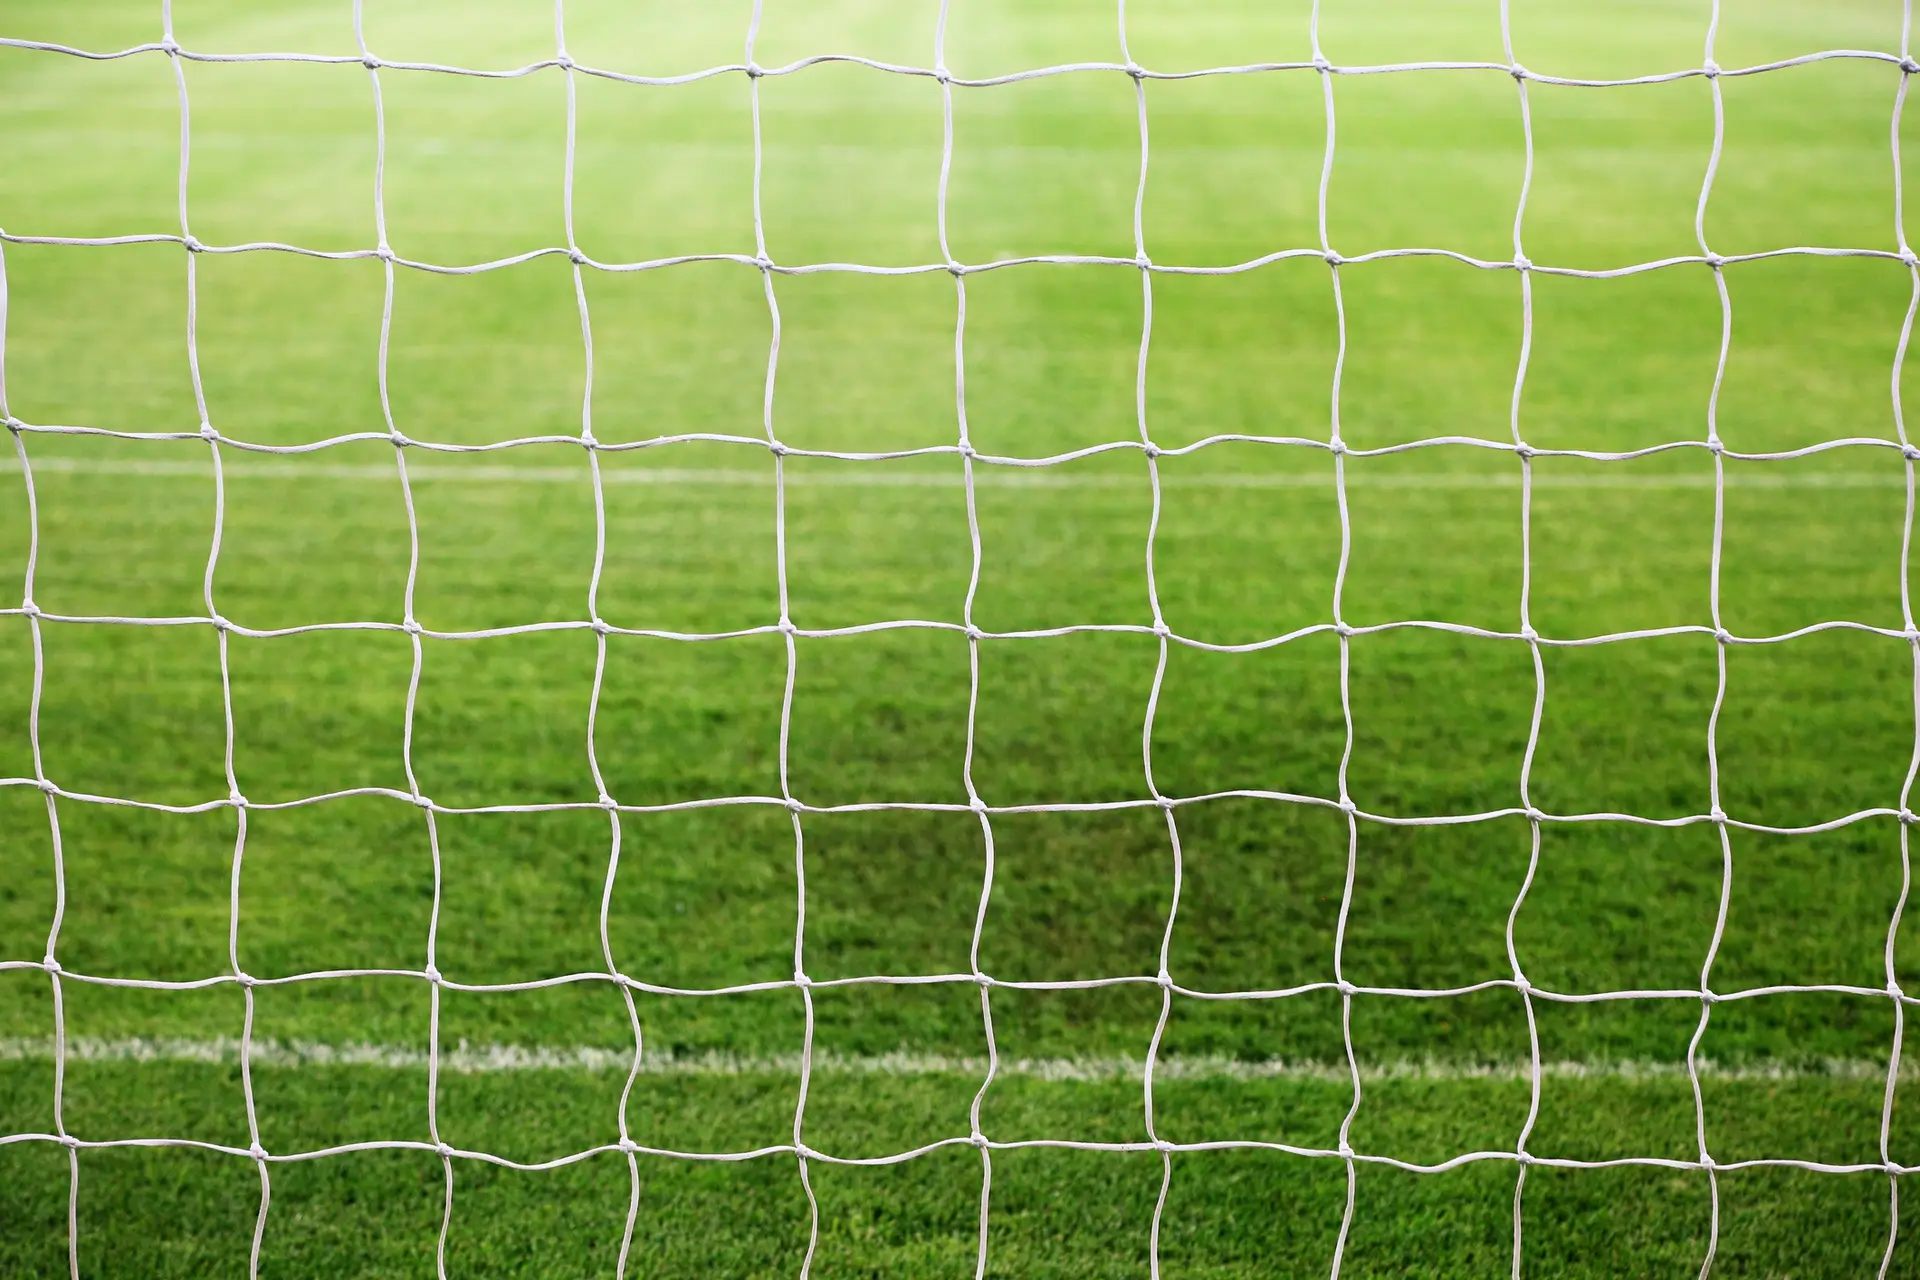 Ministério Público abre inquérito a suspeitas de assédio sexual no futebol feminino